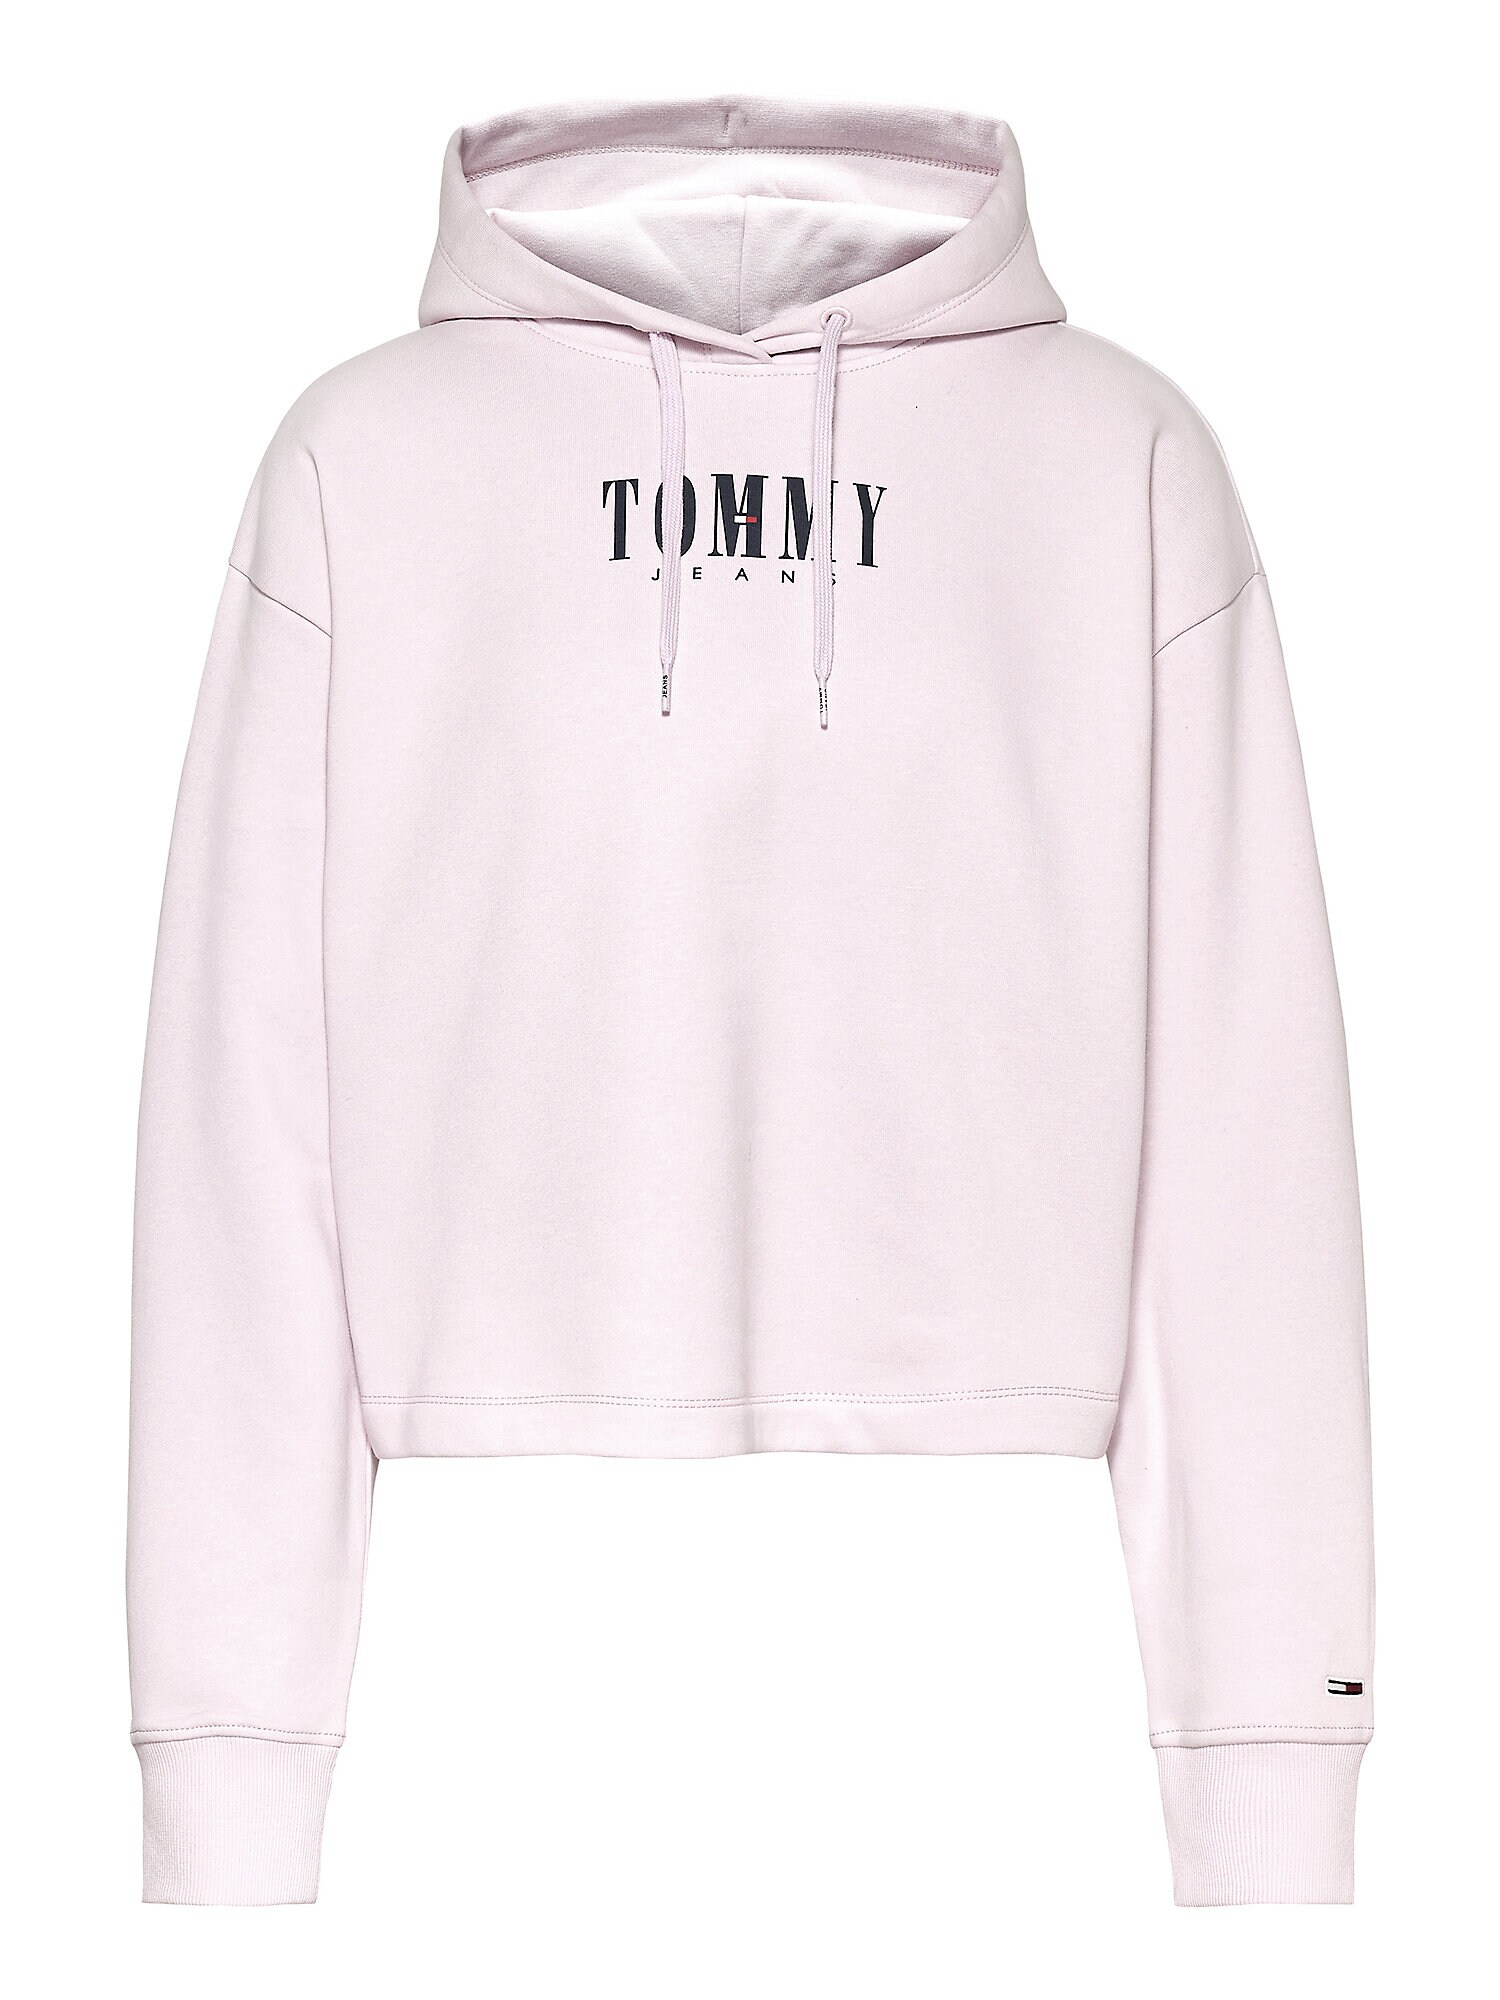 Tommy Hilfiger TOMMY HILFIGER Sweatshirt pastellpink / schwarz